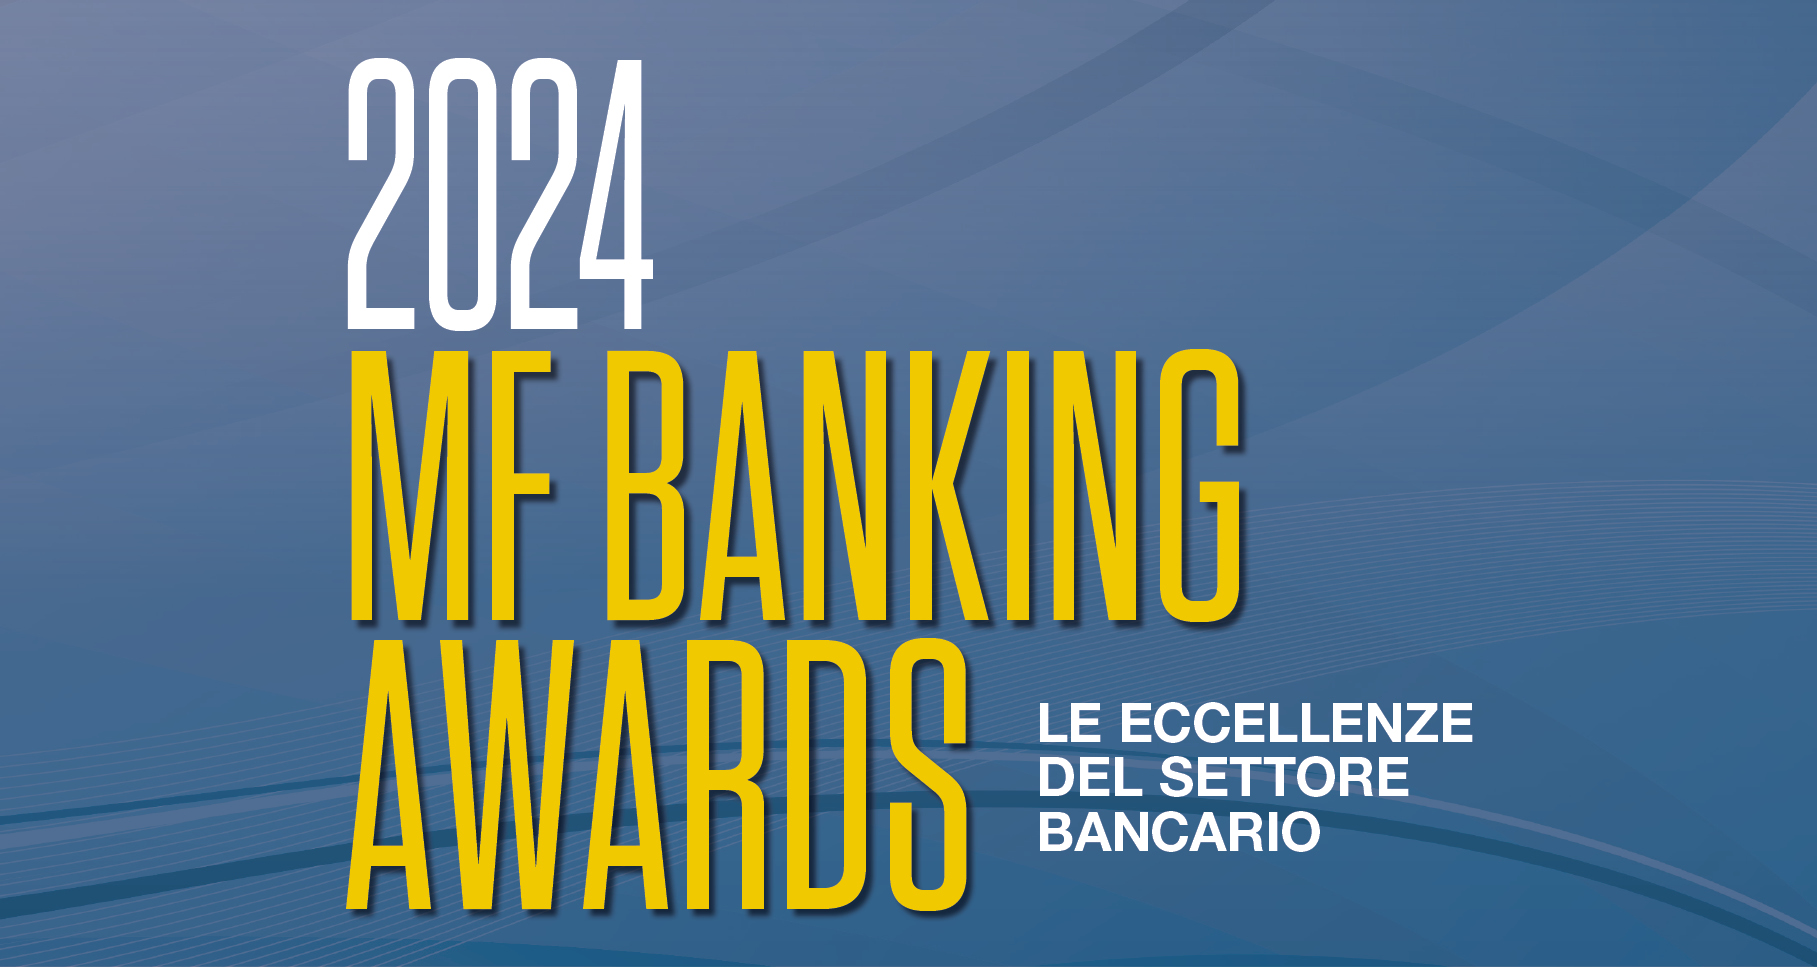 MF Banking Awards